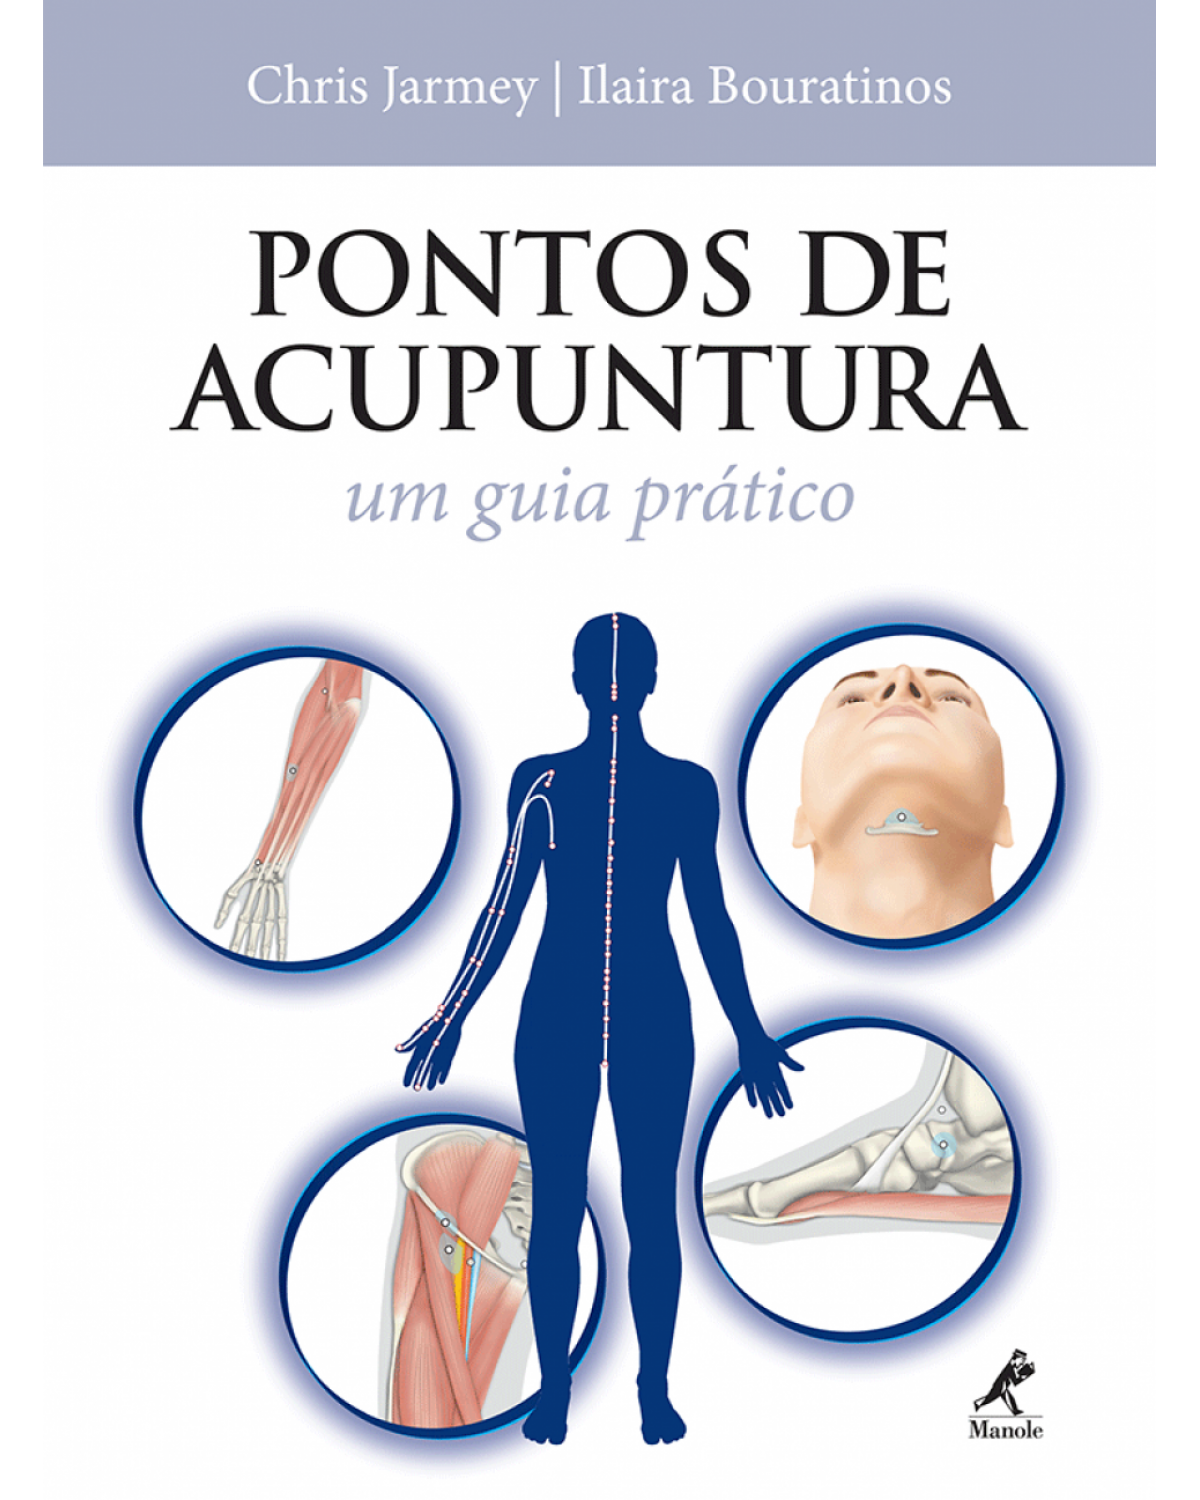 Pontos de acupuntura - Um guia prático - 1ª Edição | 2010